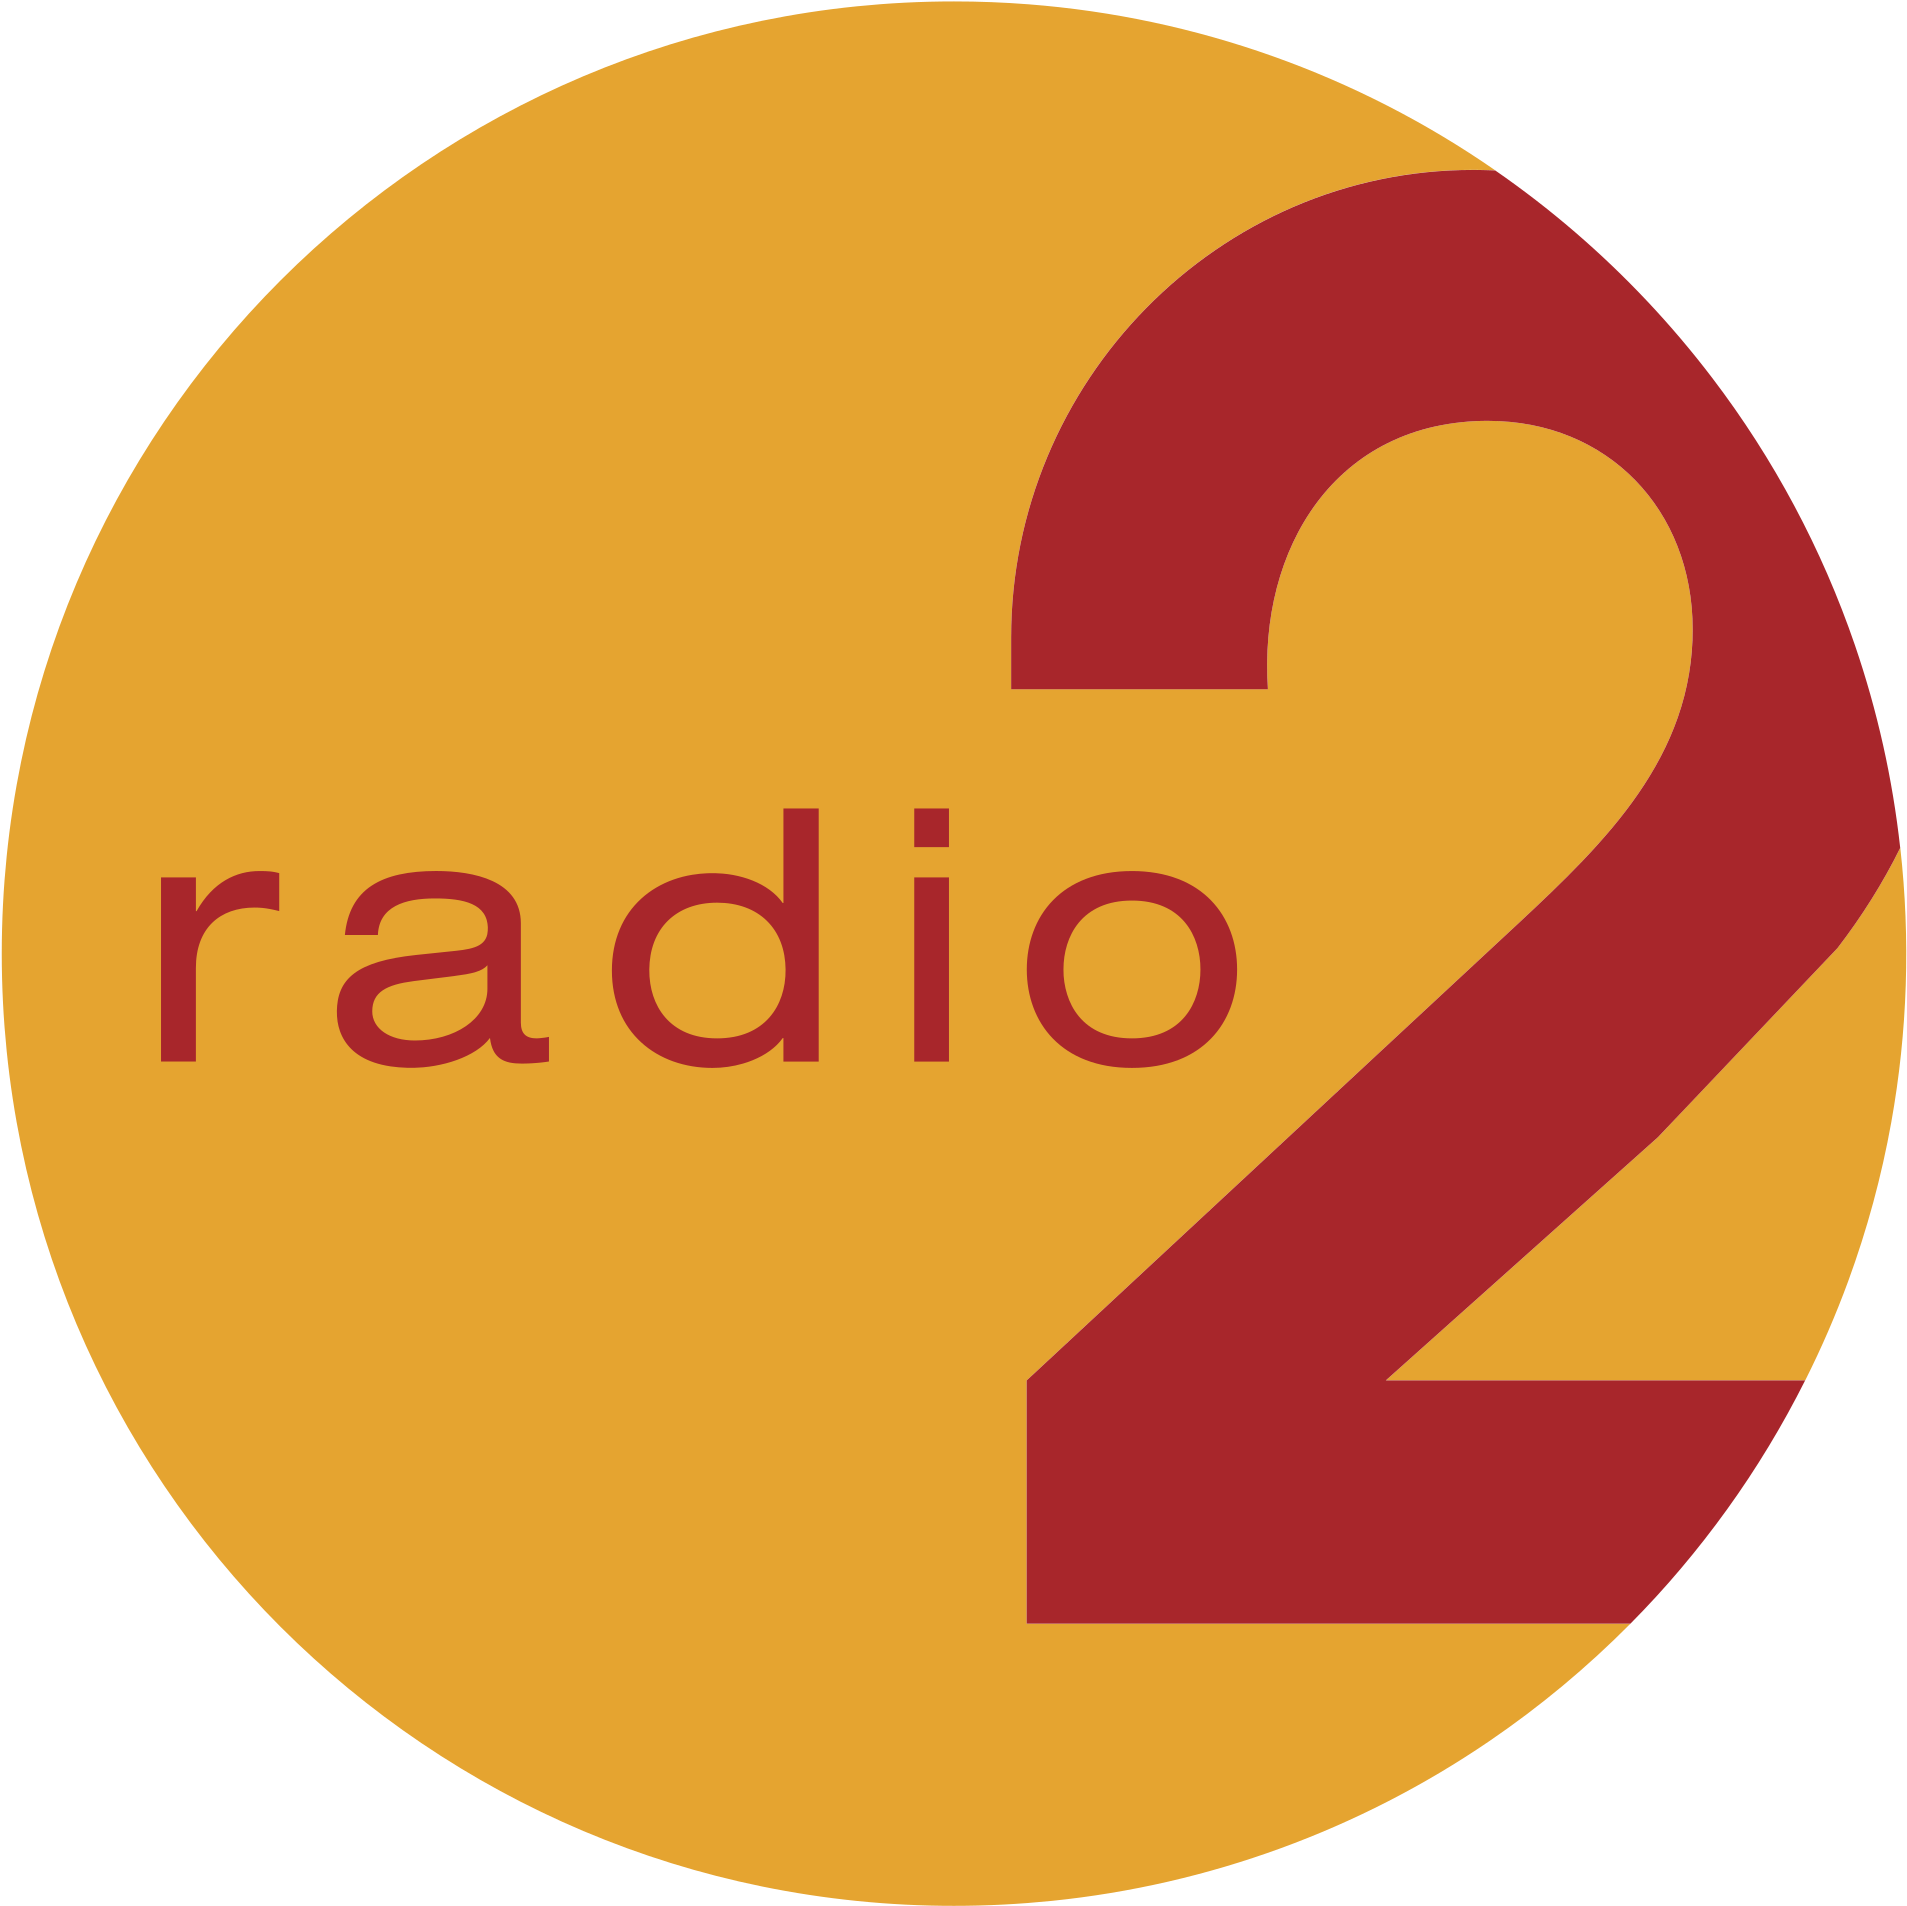 Radio 2. Радио logo 1. Радио 2.1. Три два радио логотип.